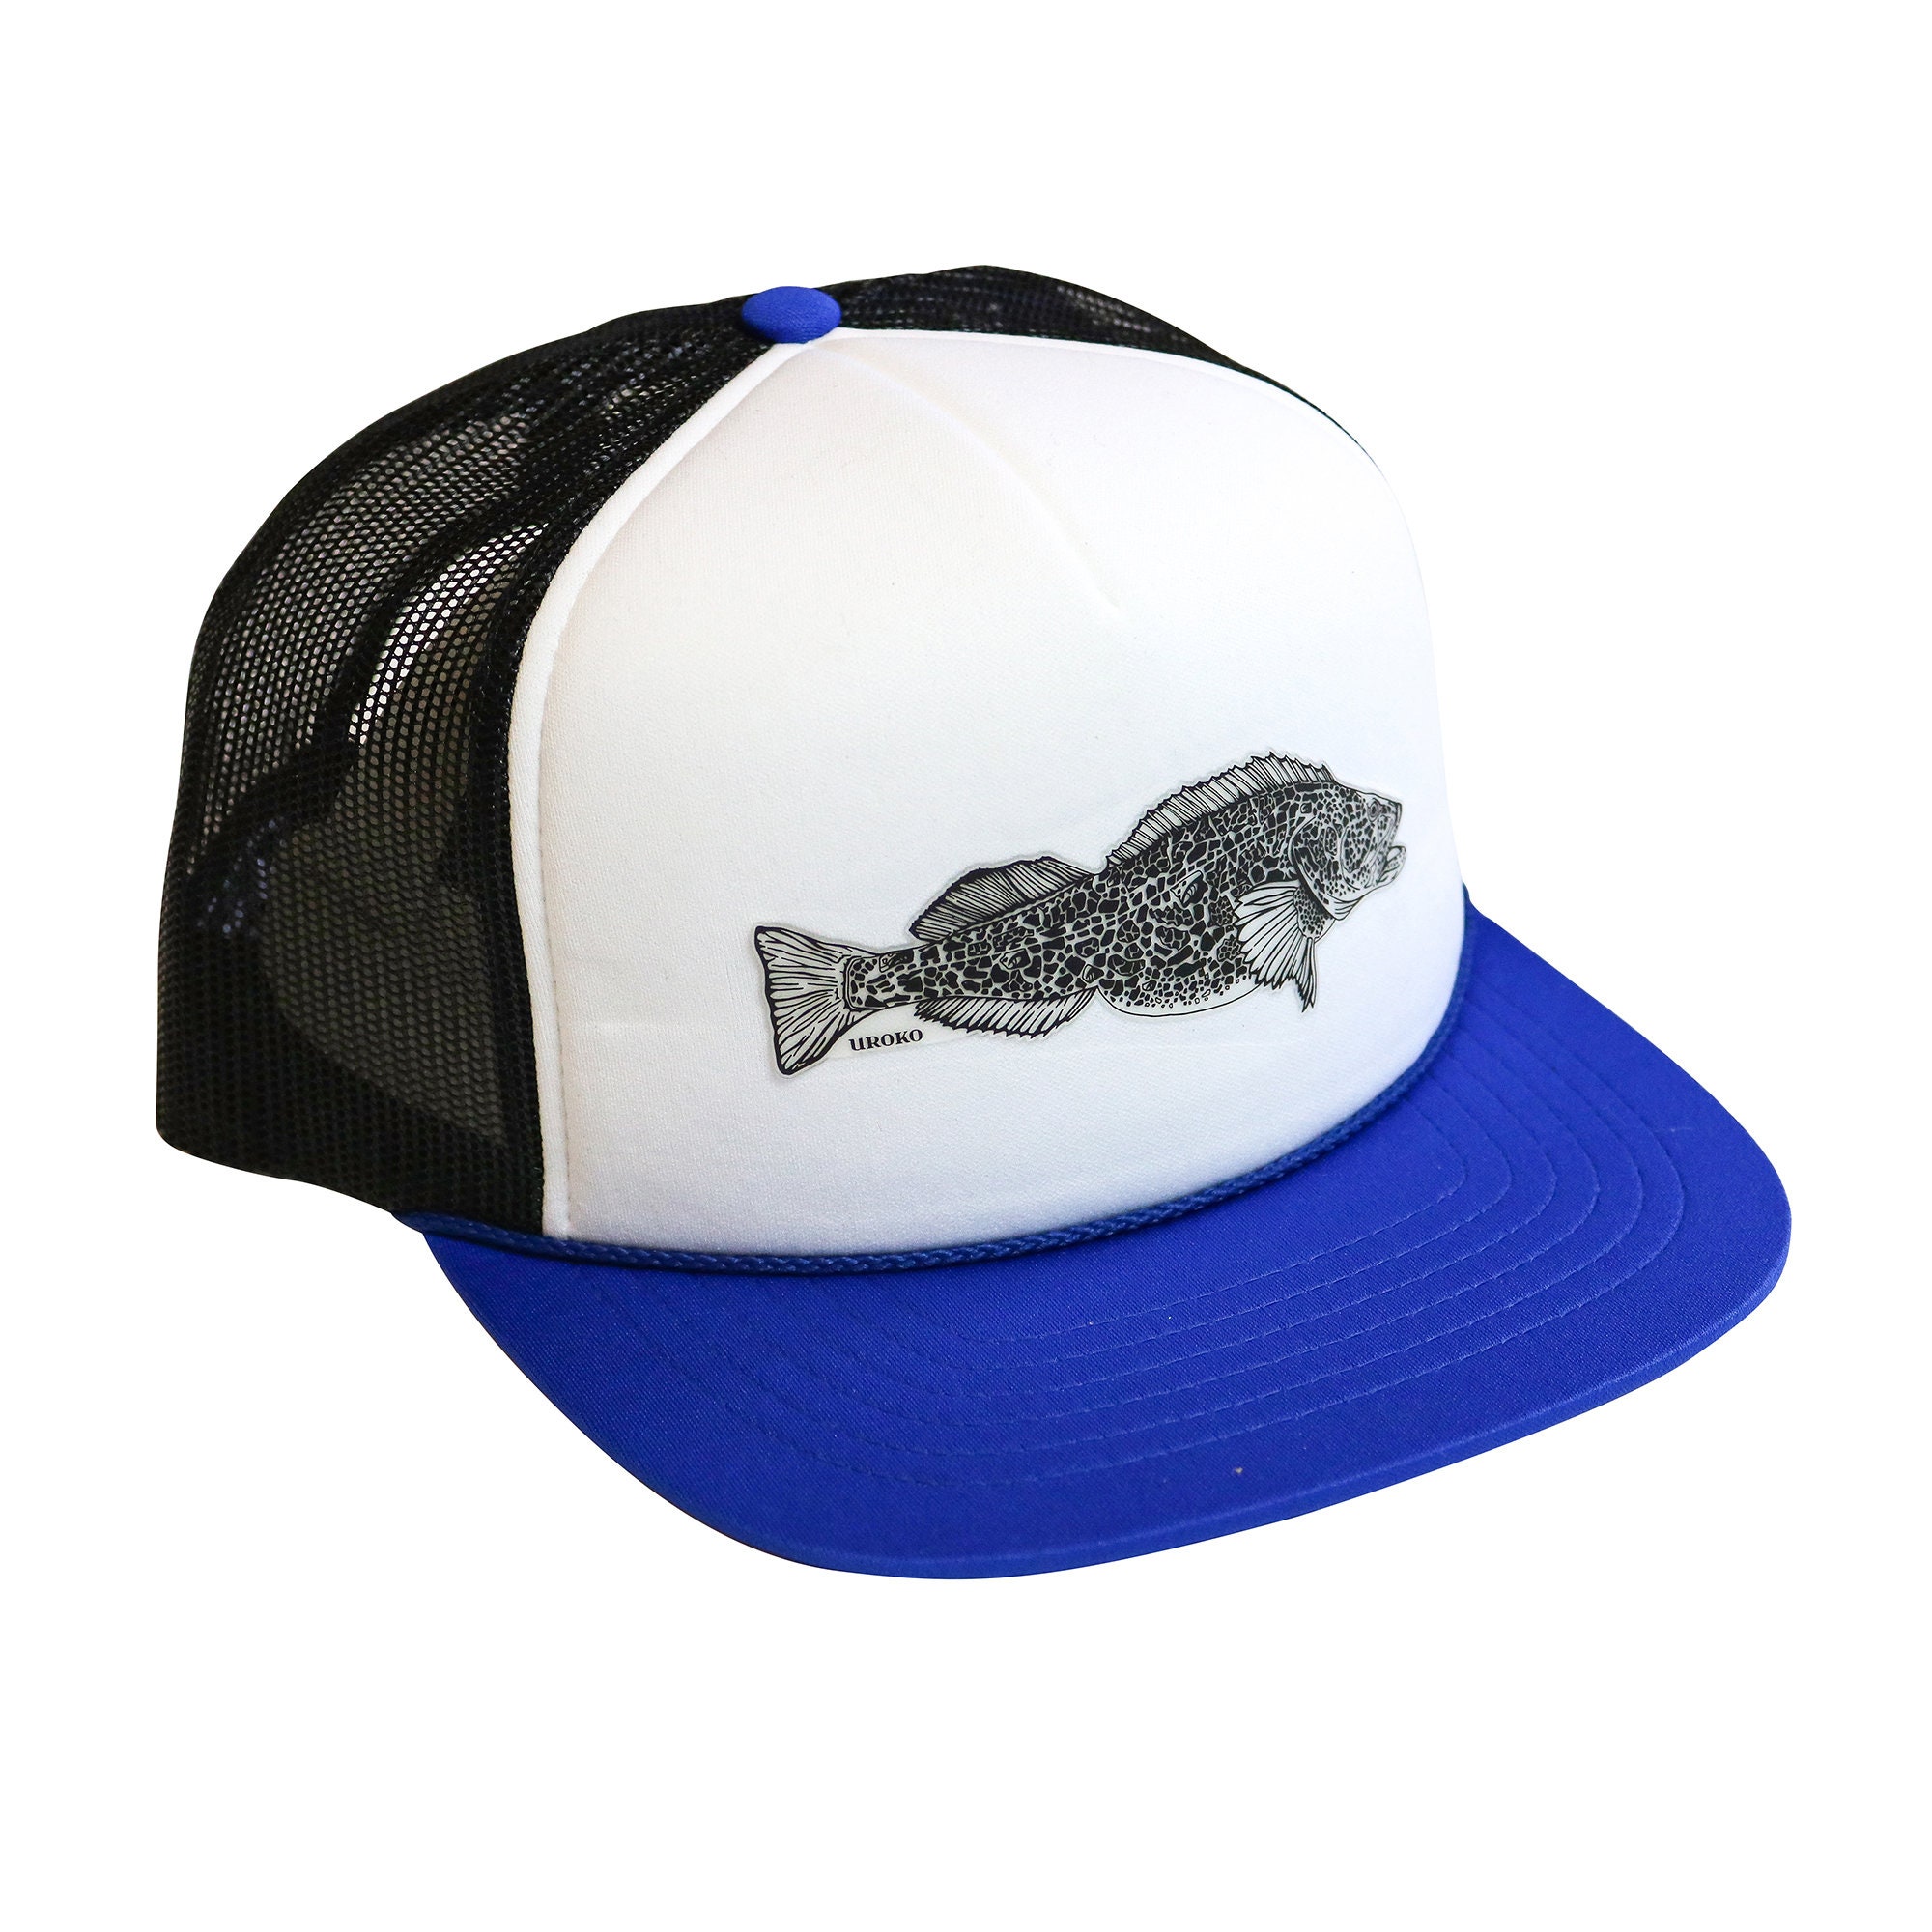 LING COD Foamy Trucker Hat Snapback Blue White Black California